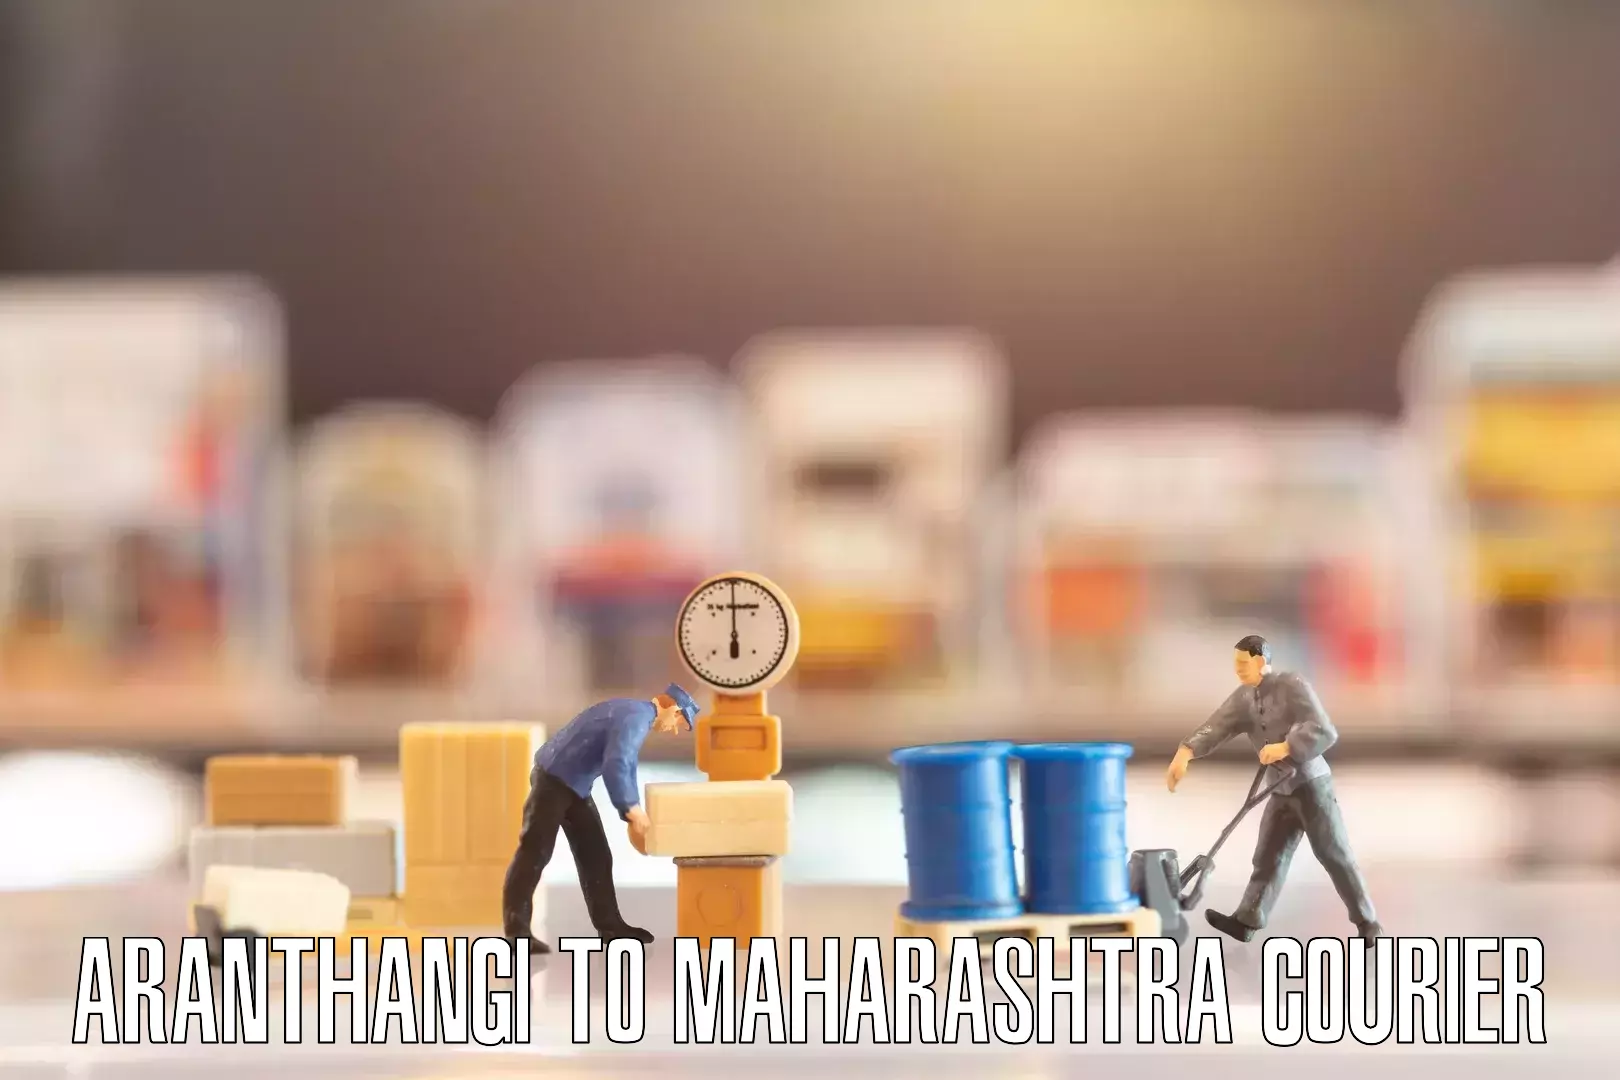 Moving and storage services Aranthangi to Maharashtra